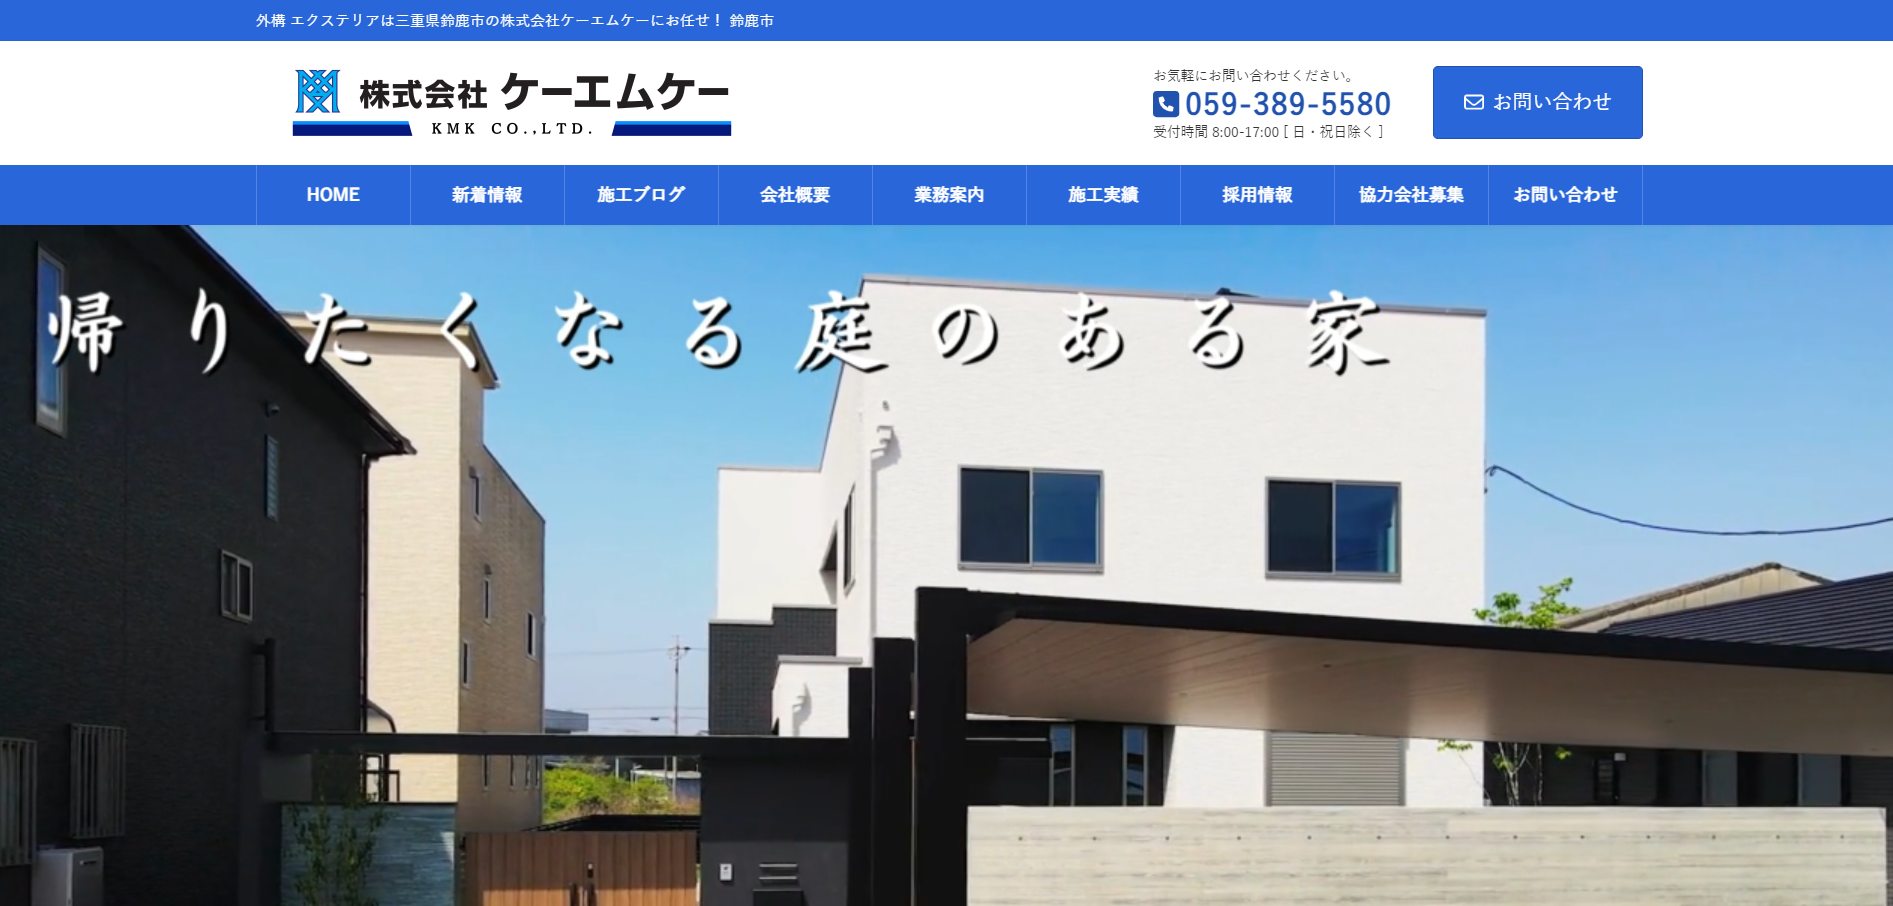 三重県で評判のおすすめ外構業者ランキング 第10位 株式会社ケーエムケー